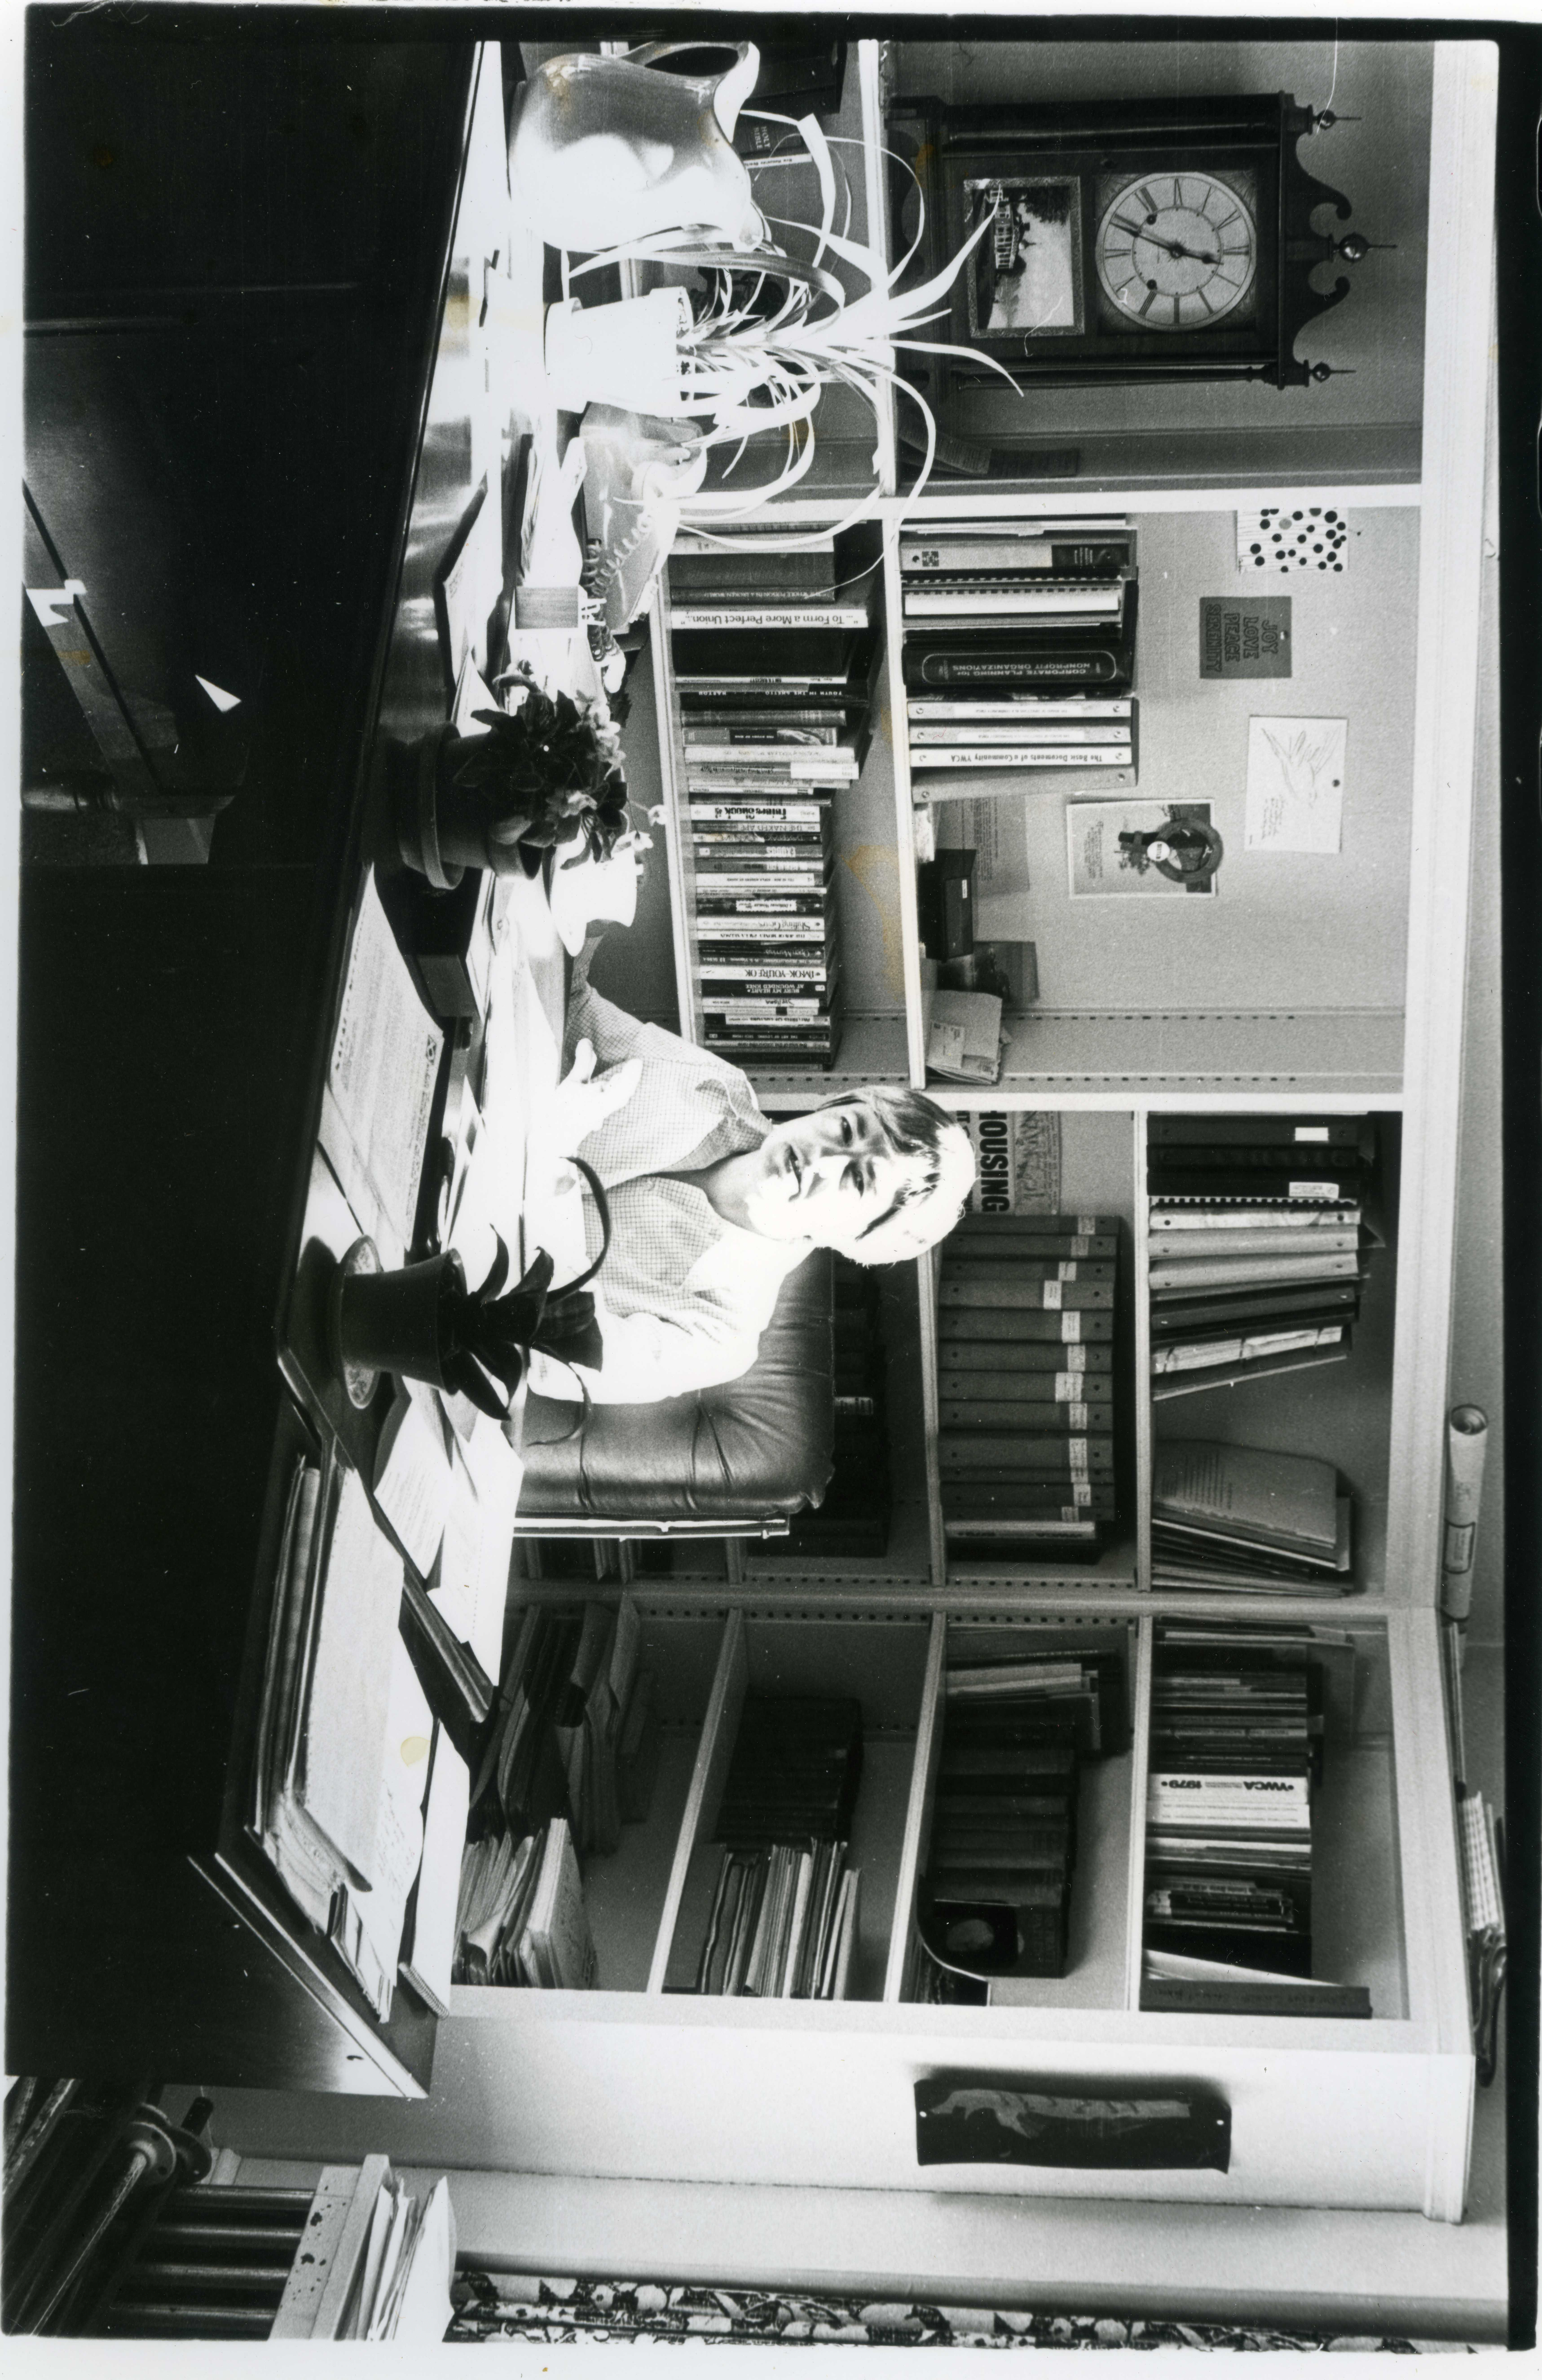 1975 Cheyne Foreman - YWCA Executive Director